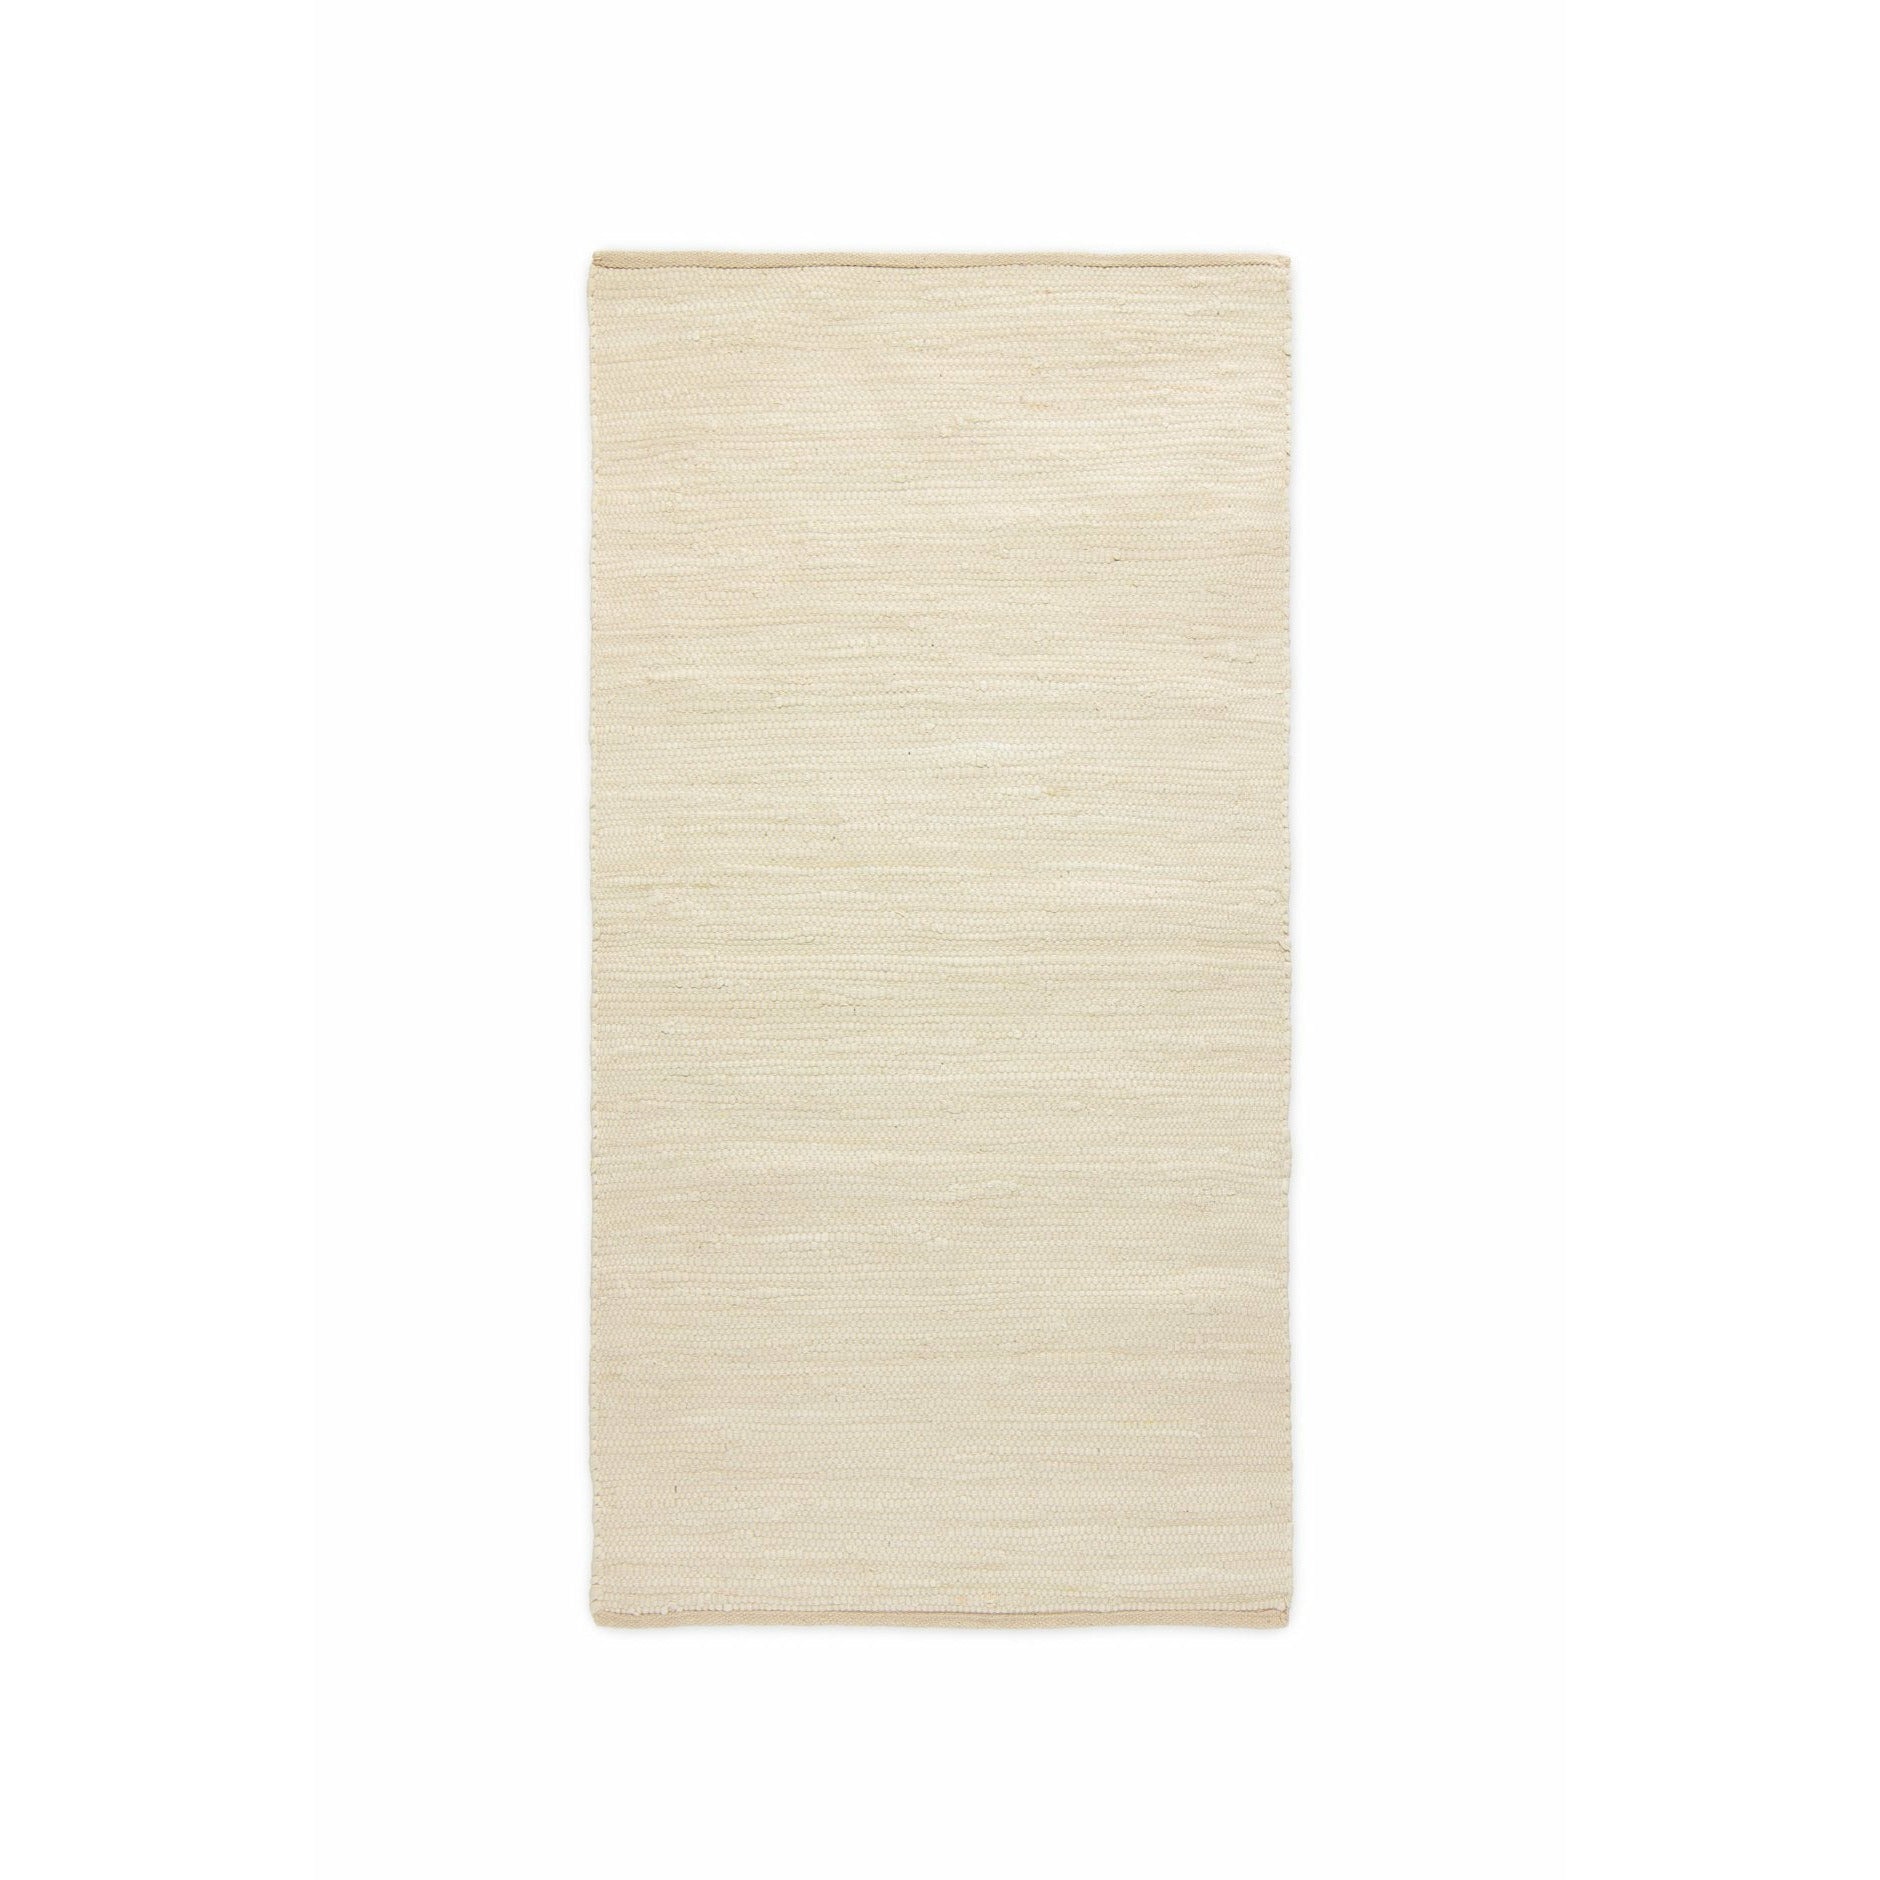 Tappeto di cotone solido deserto di tappeto bianco, 60 x 90 cm